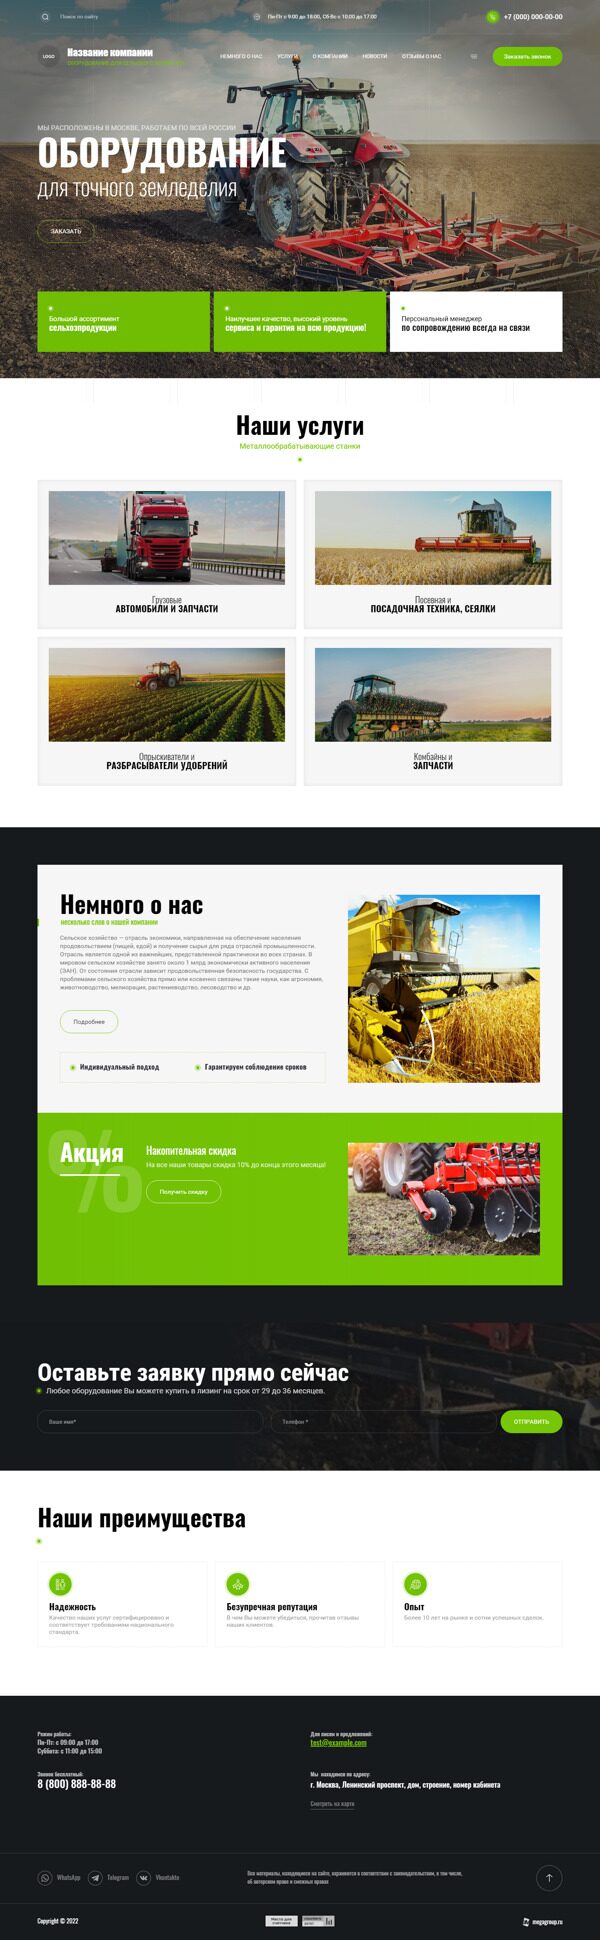 Готовый Сайт-Бизнес № 4236922 - Оборудование для сельского хозяйства (Десктопная версия)